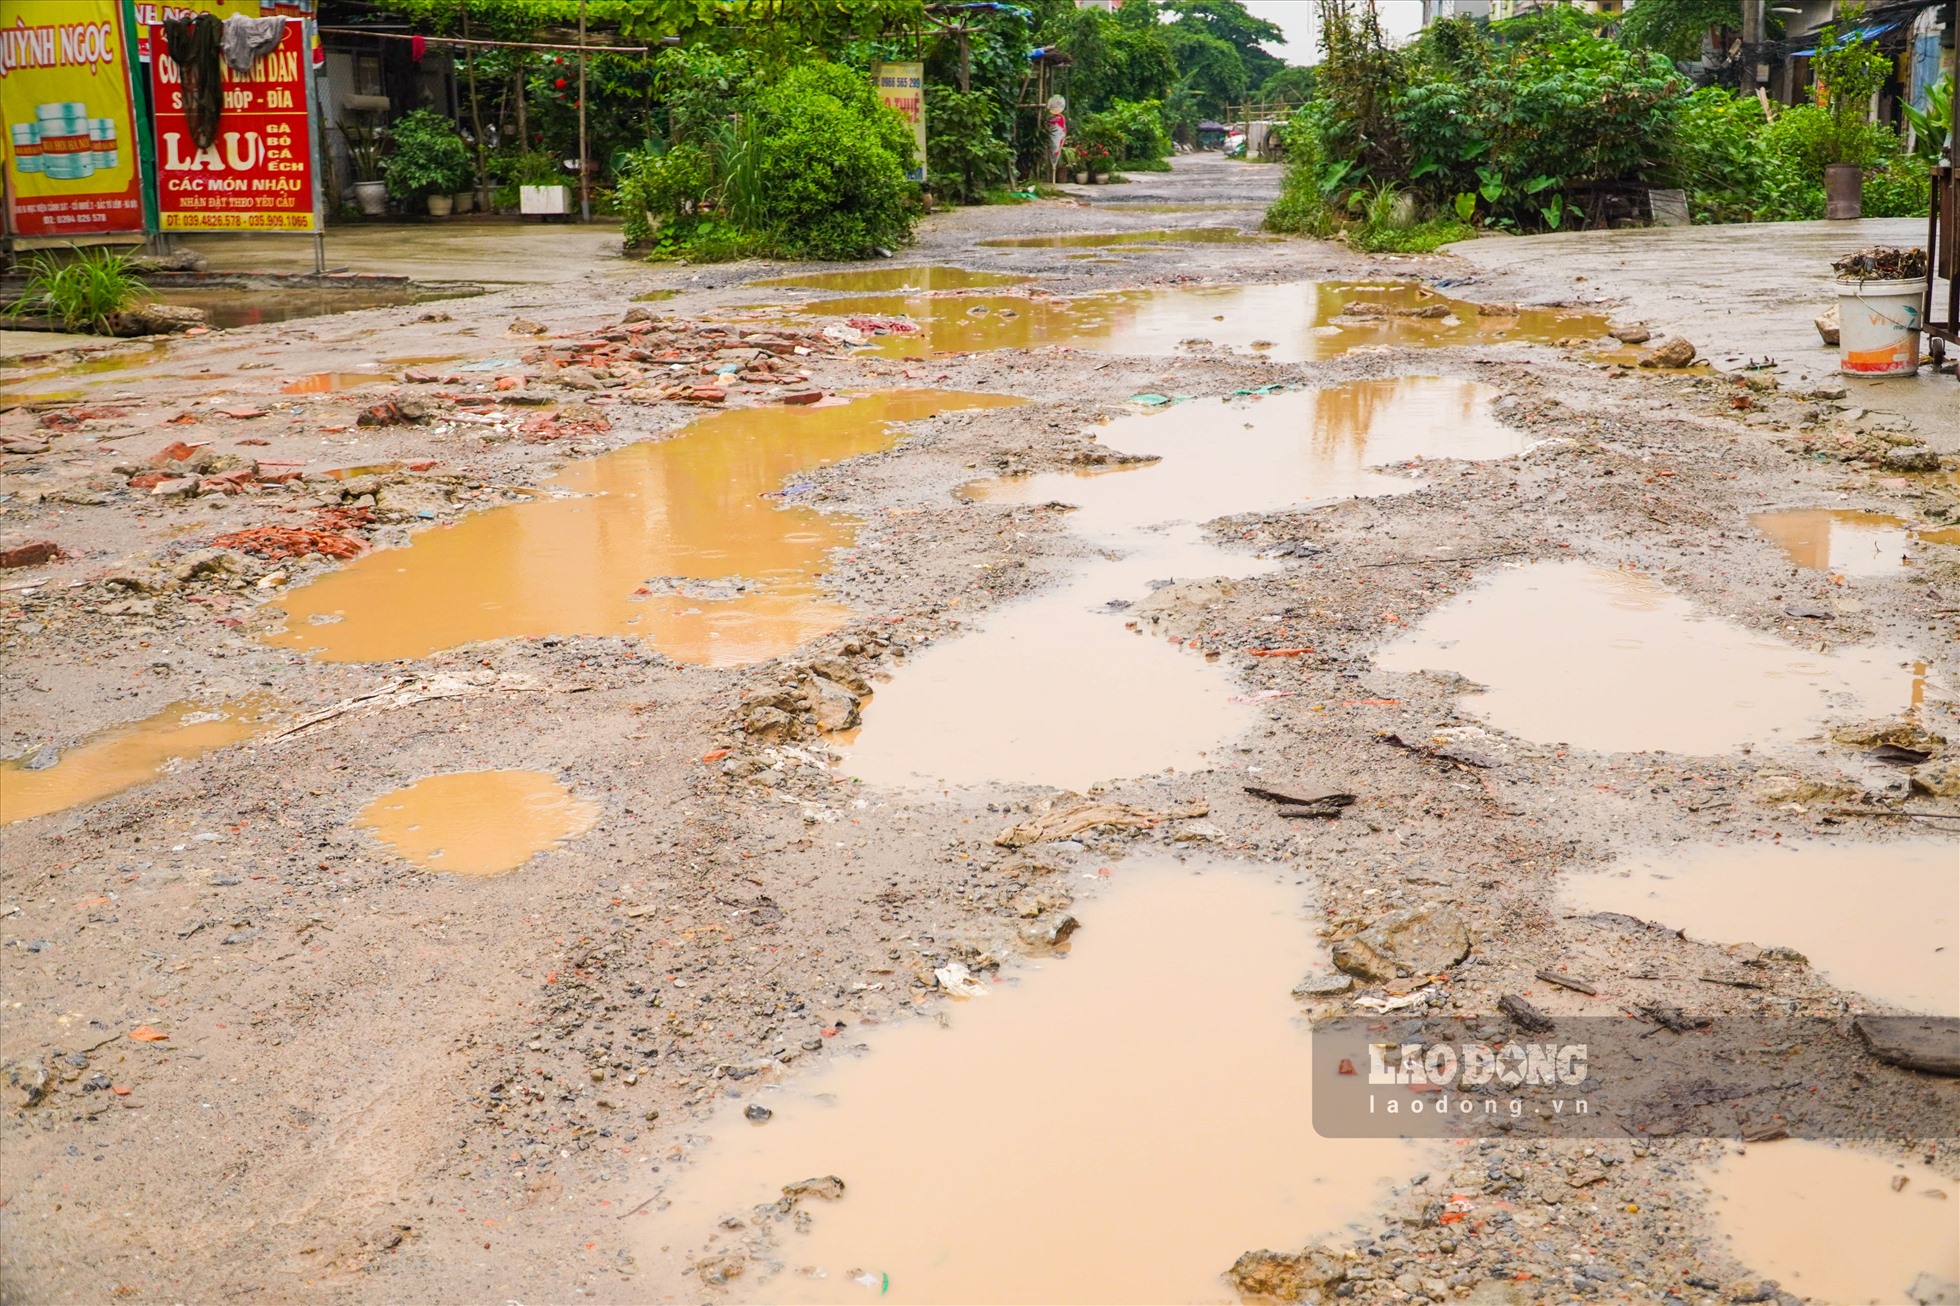 Thời tiết chuyển mưa, các “ổ voi” ngập trong nước, bùn, đất,... khiến con đường trở nên nhếch nhác, bẩn thỉu.